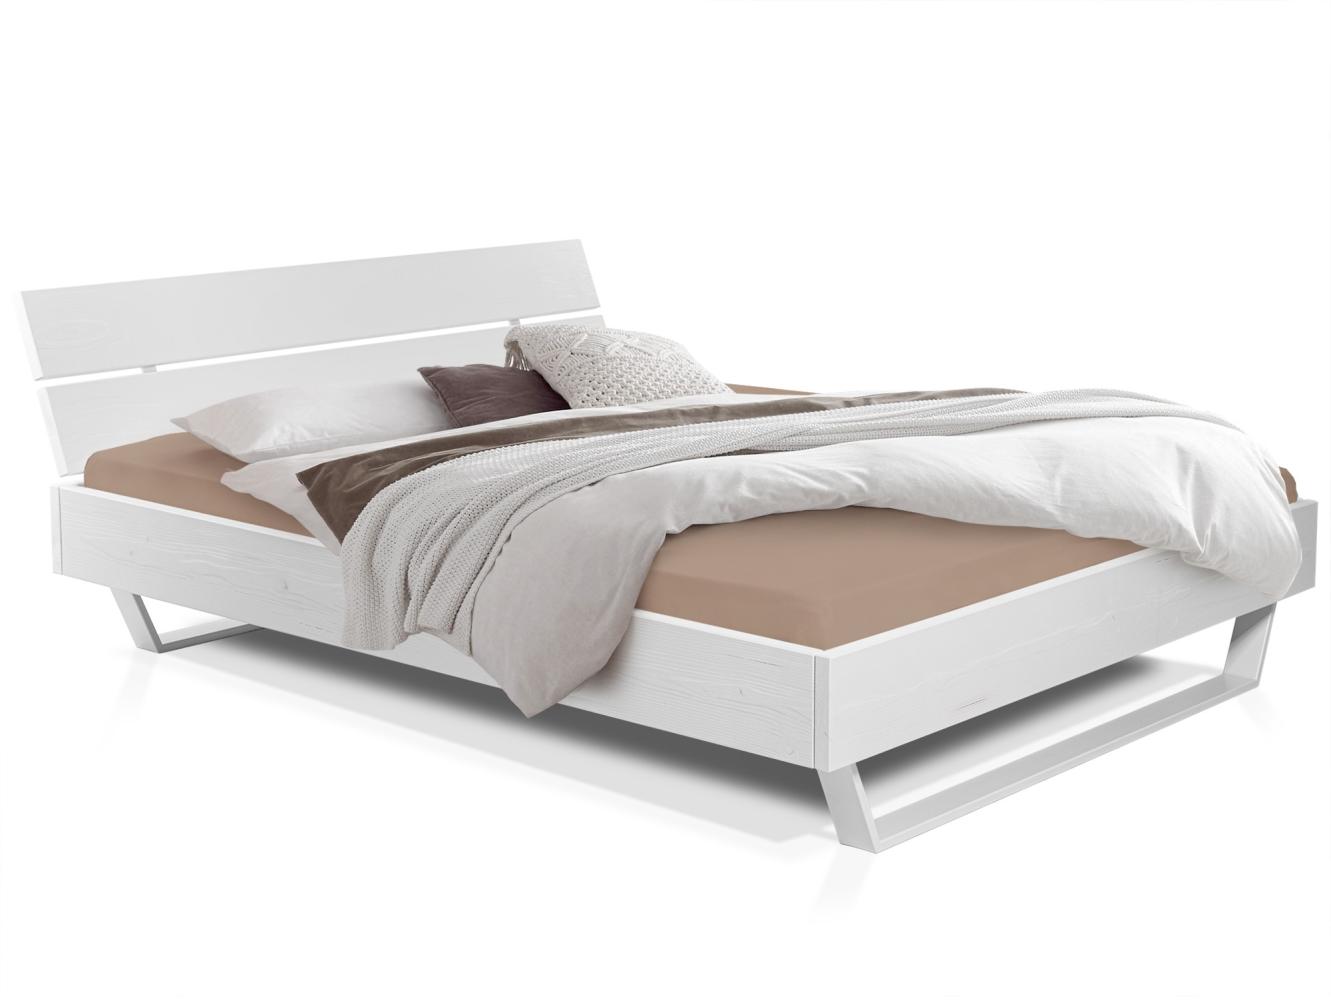 Möbel-Eins LUKY Kufenbett mit Kopfteil, Material Massivholz, Fichte massiv, Kufen weiß weiss 120 x 220 cm Bild 1